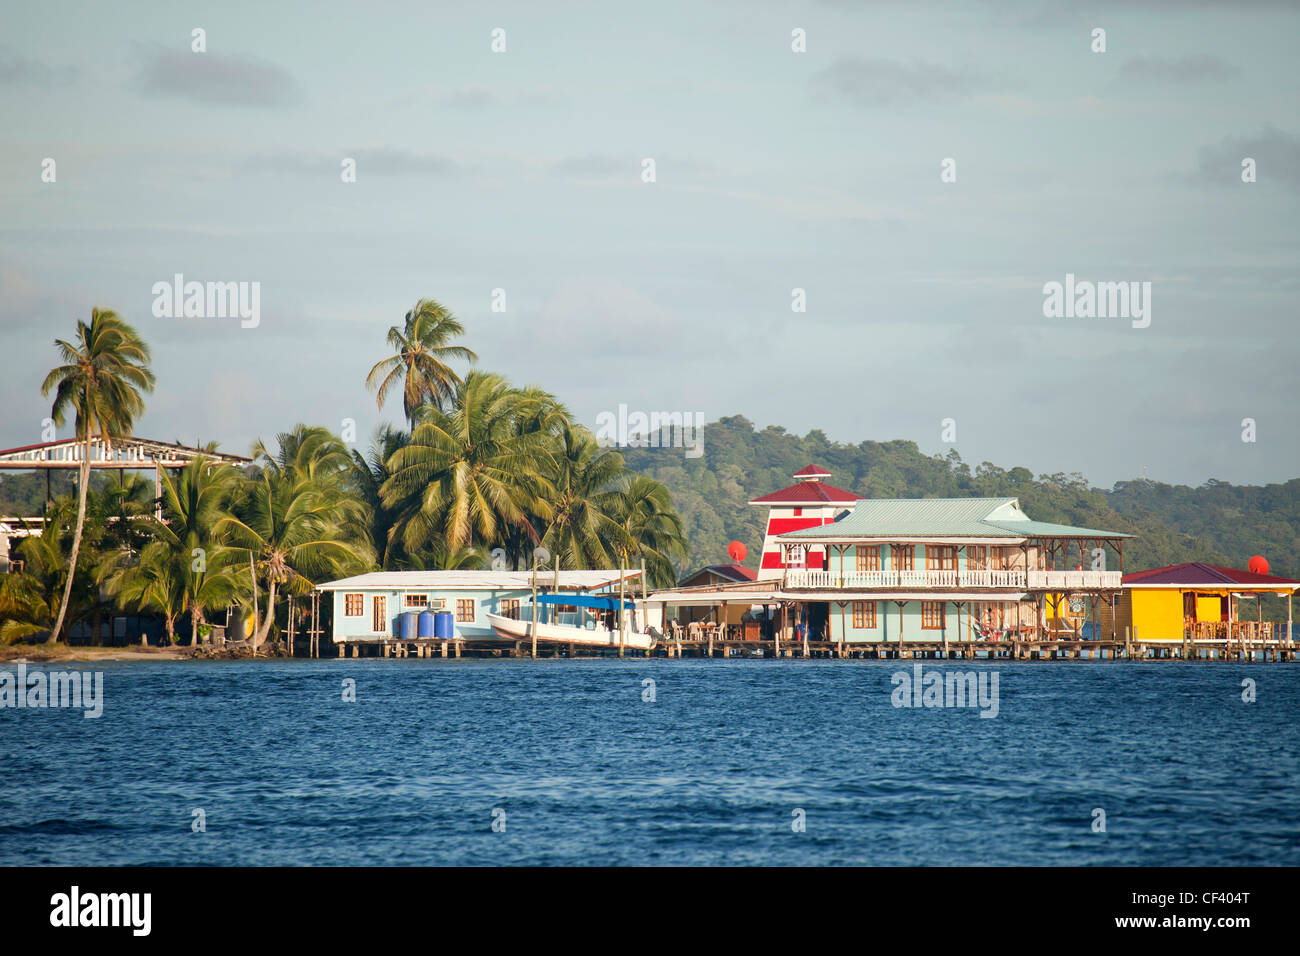 Hotel El Faro del Colibri and the coast of Carenero Island, Bocas del Toro, Panama, Central America Stock Photo